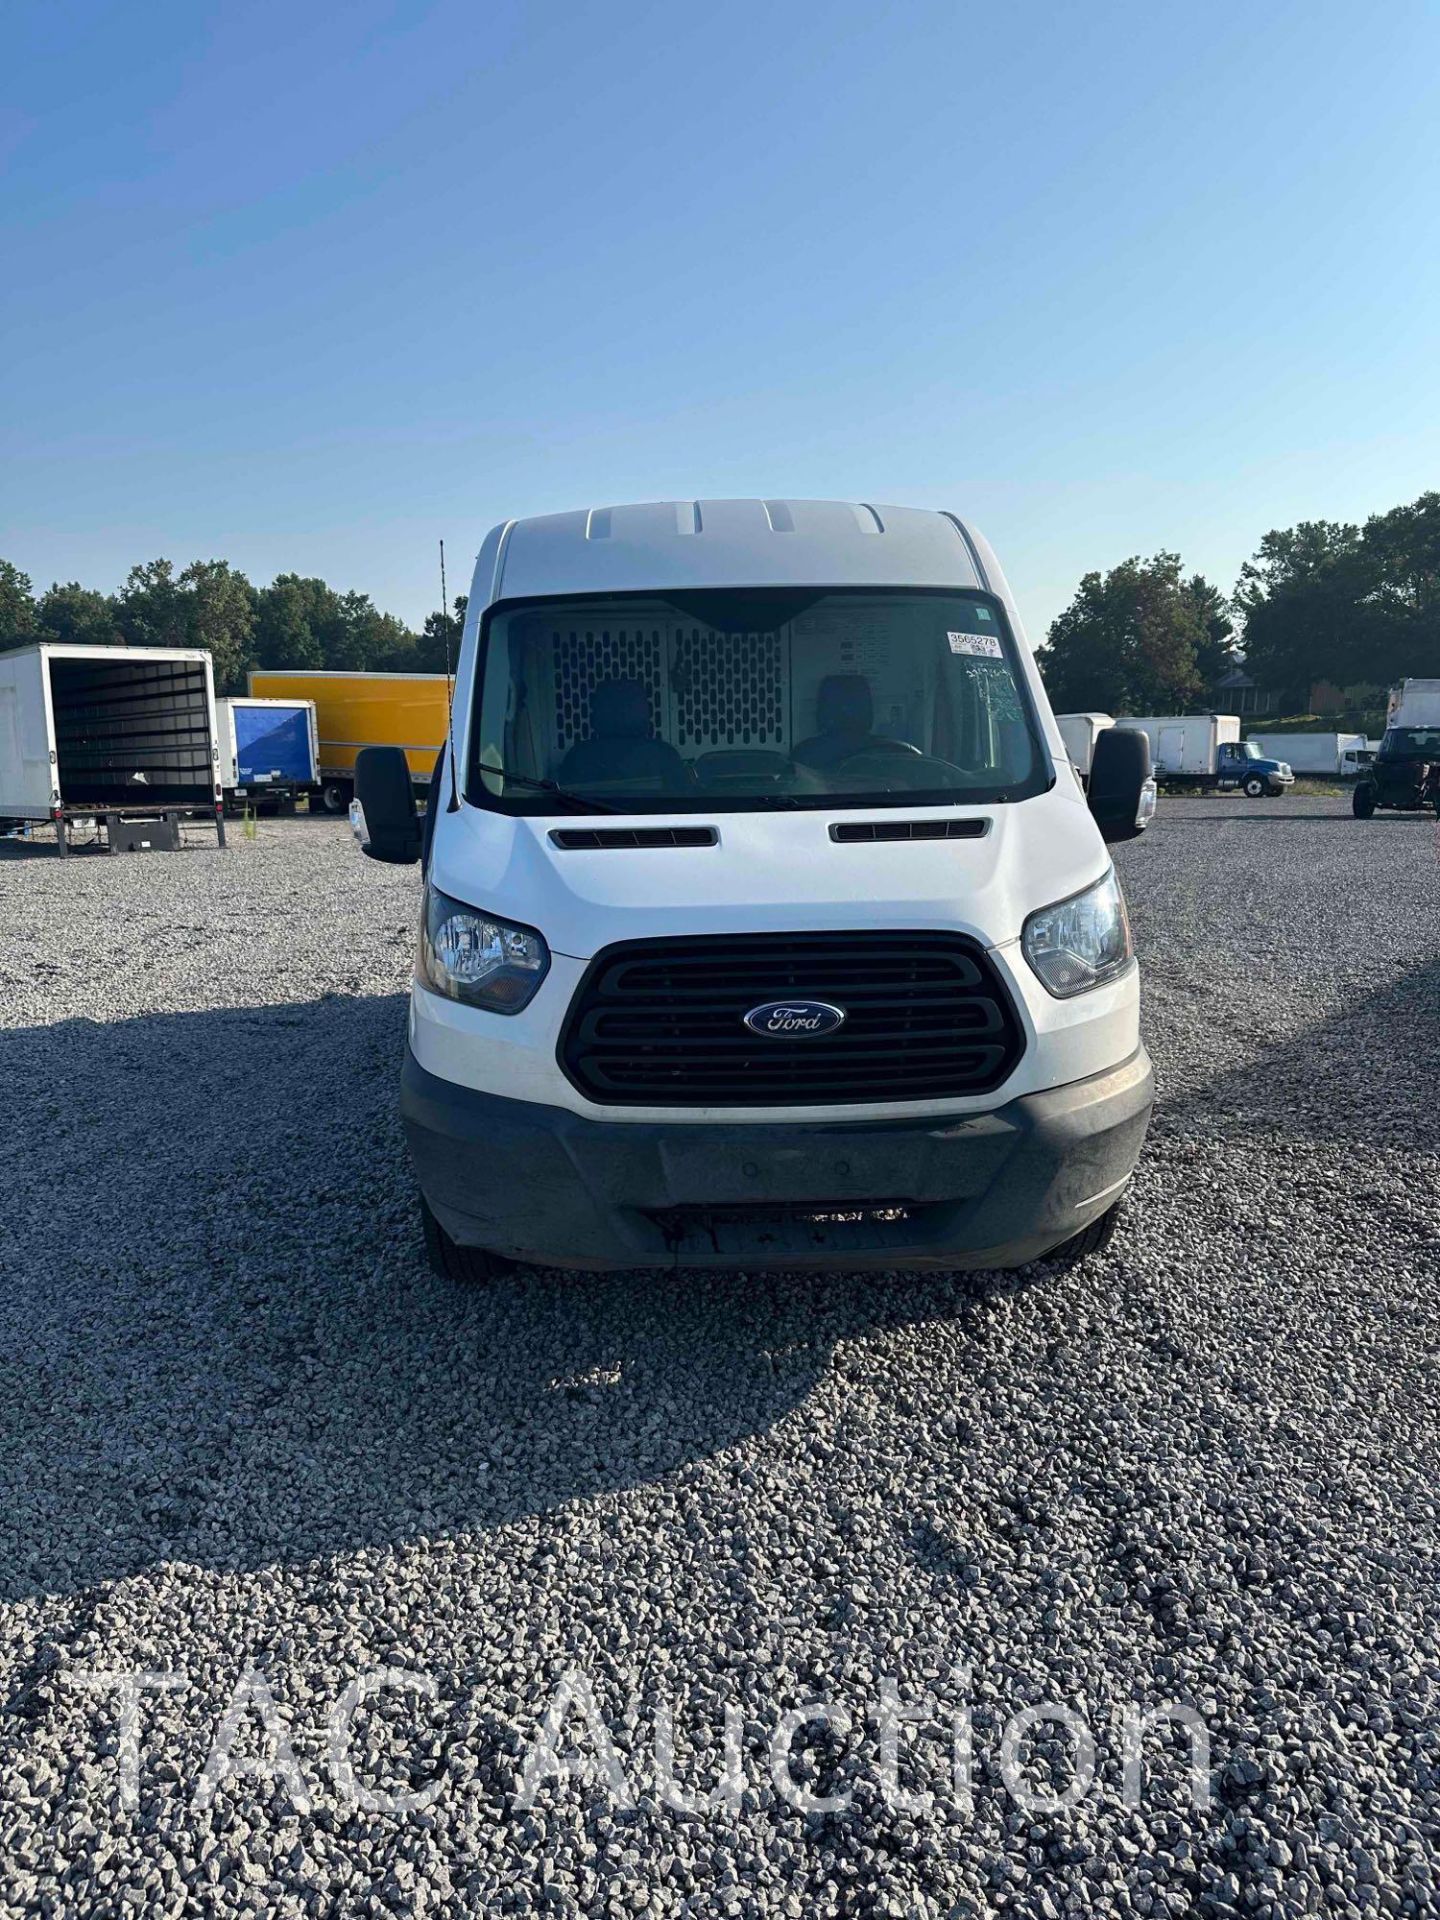 2019 Ford Transit 150 Cargo Van - Image 2 of 25